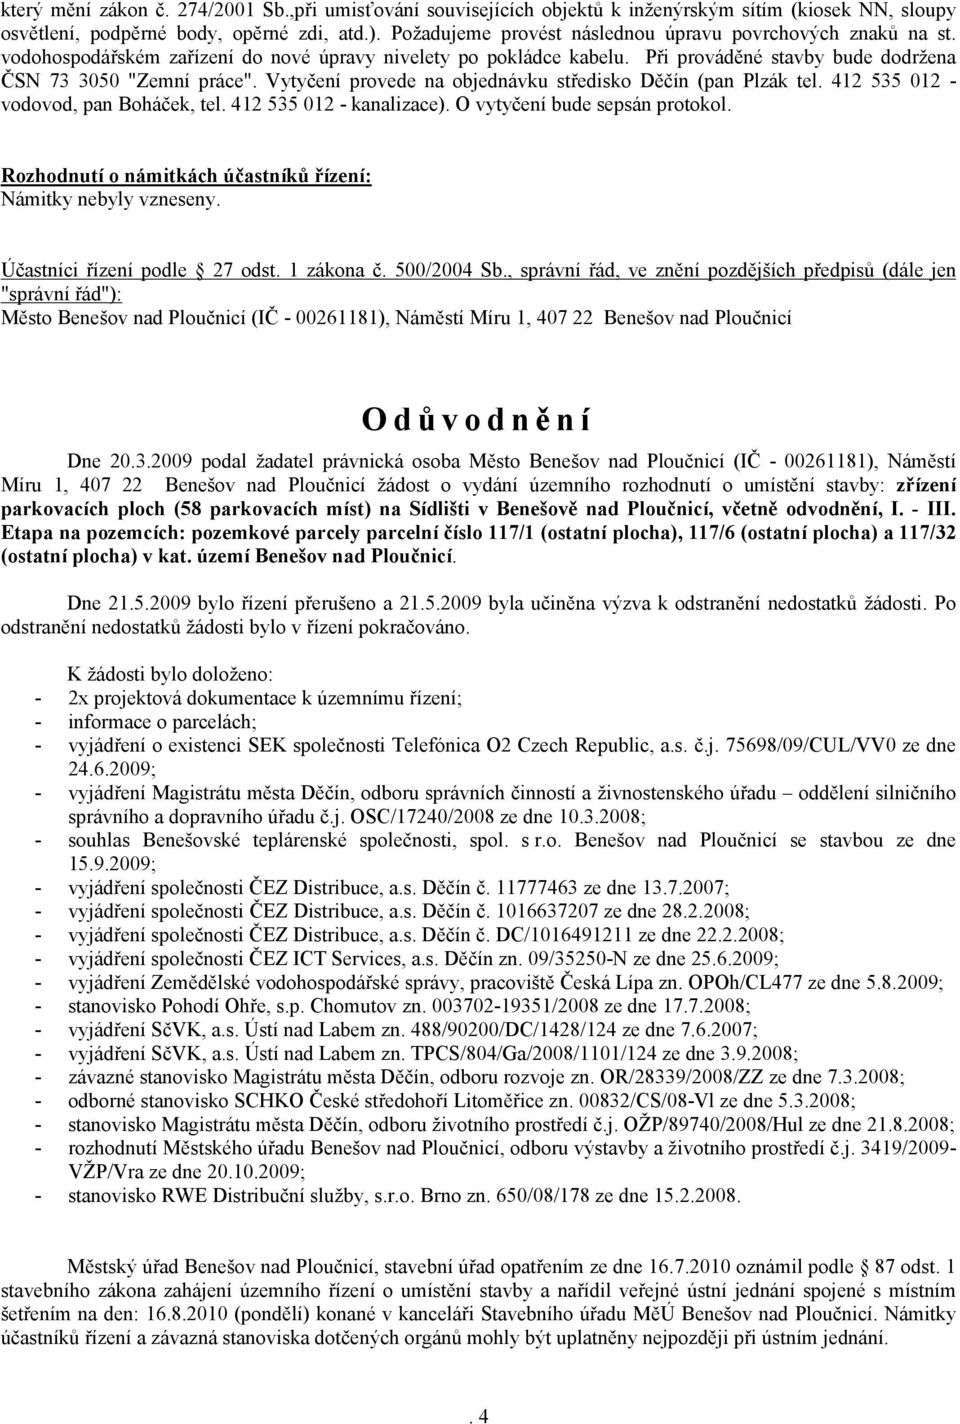 Vytyčení provede na objednávku středisko Děčín (pan Plzák tel. 412 535 012 - vodovod, pan Boháček, tel. 412 535 012 - kanalizace). O vytyčení bude sepsán protokol.